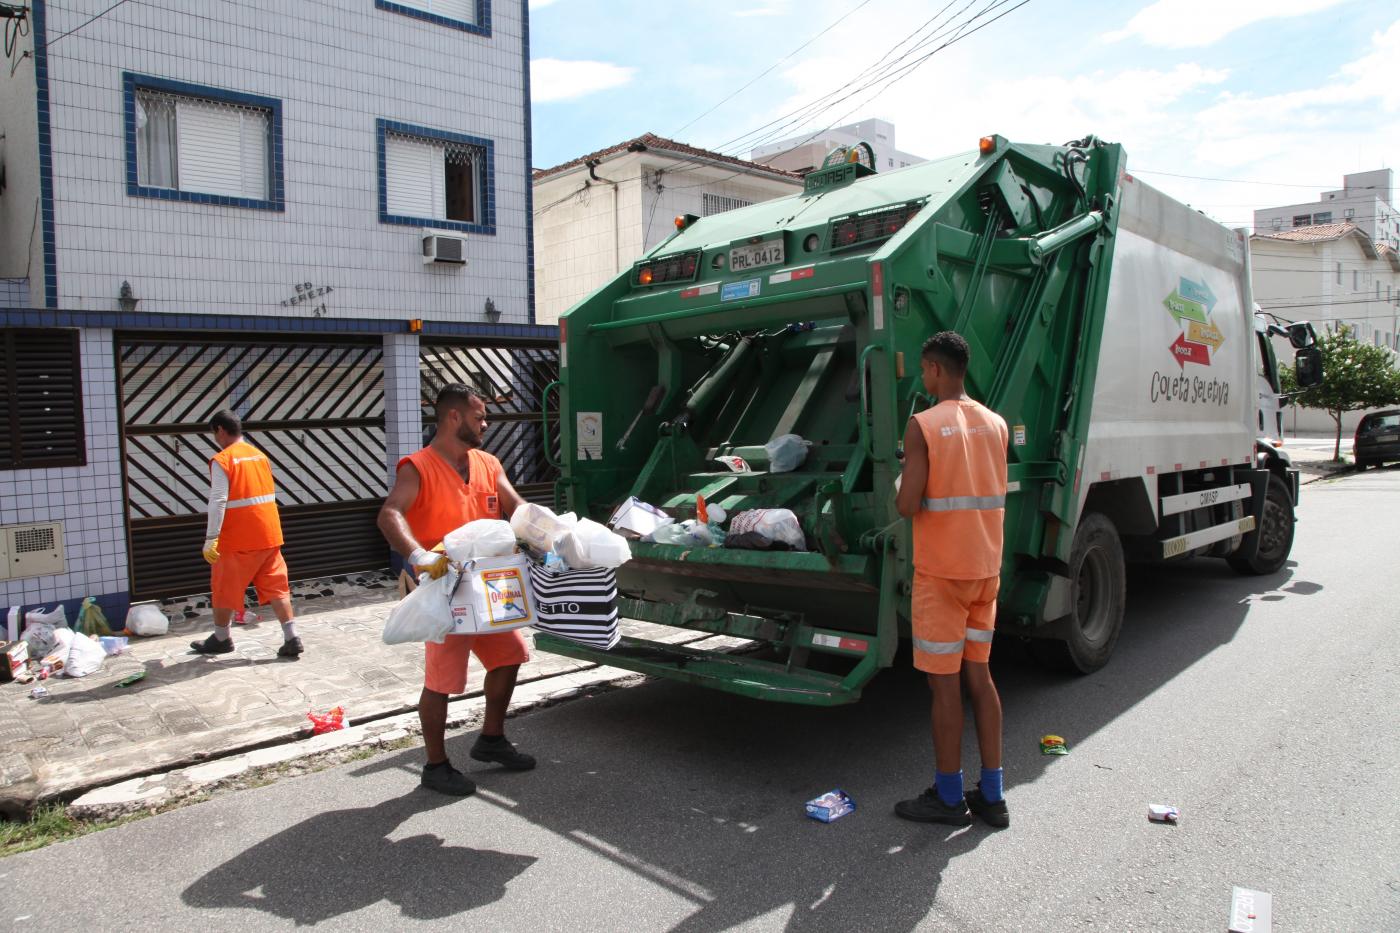 Coletores de lixo recolhem sacos em rua e os depositam em caminhão de coleta seletiva. #Pracegover